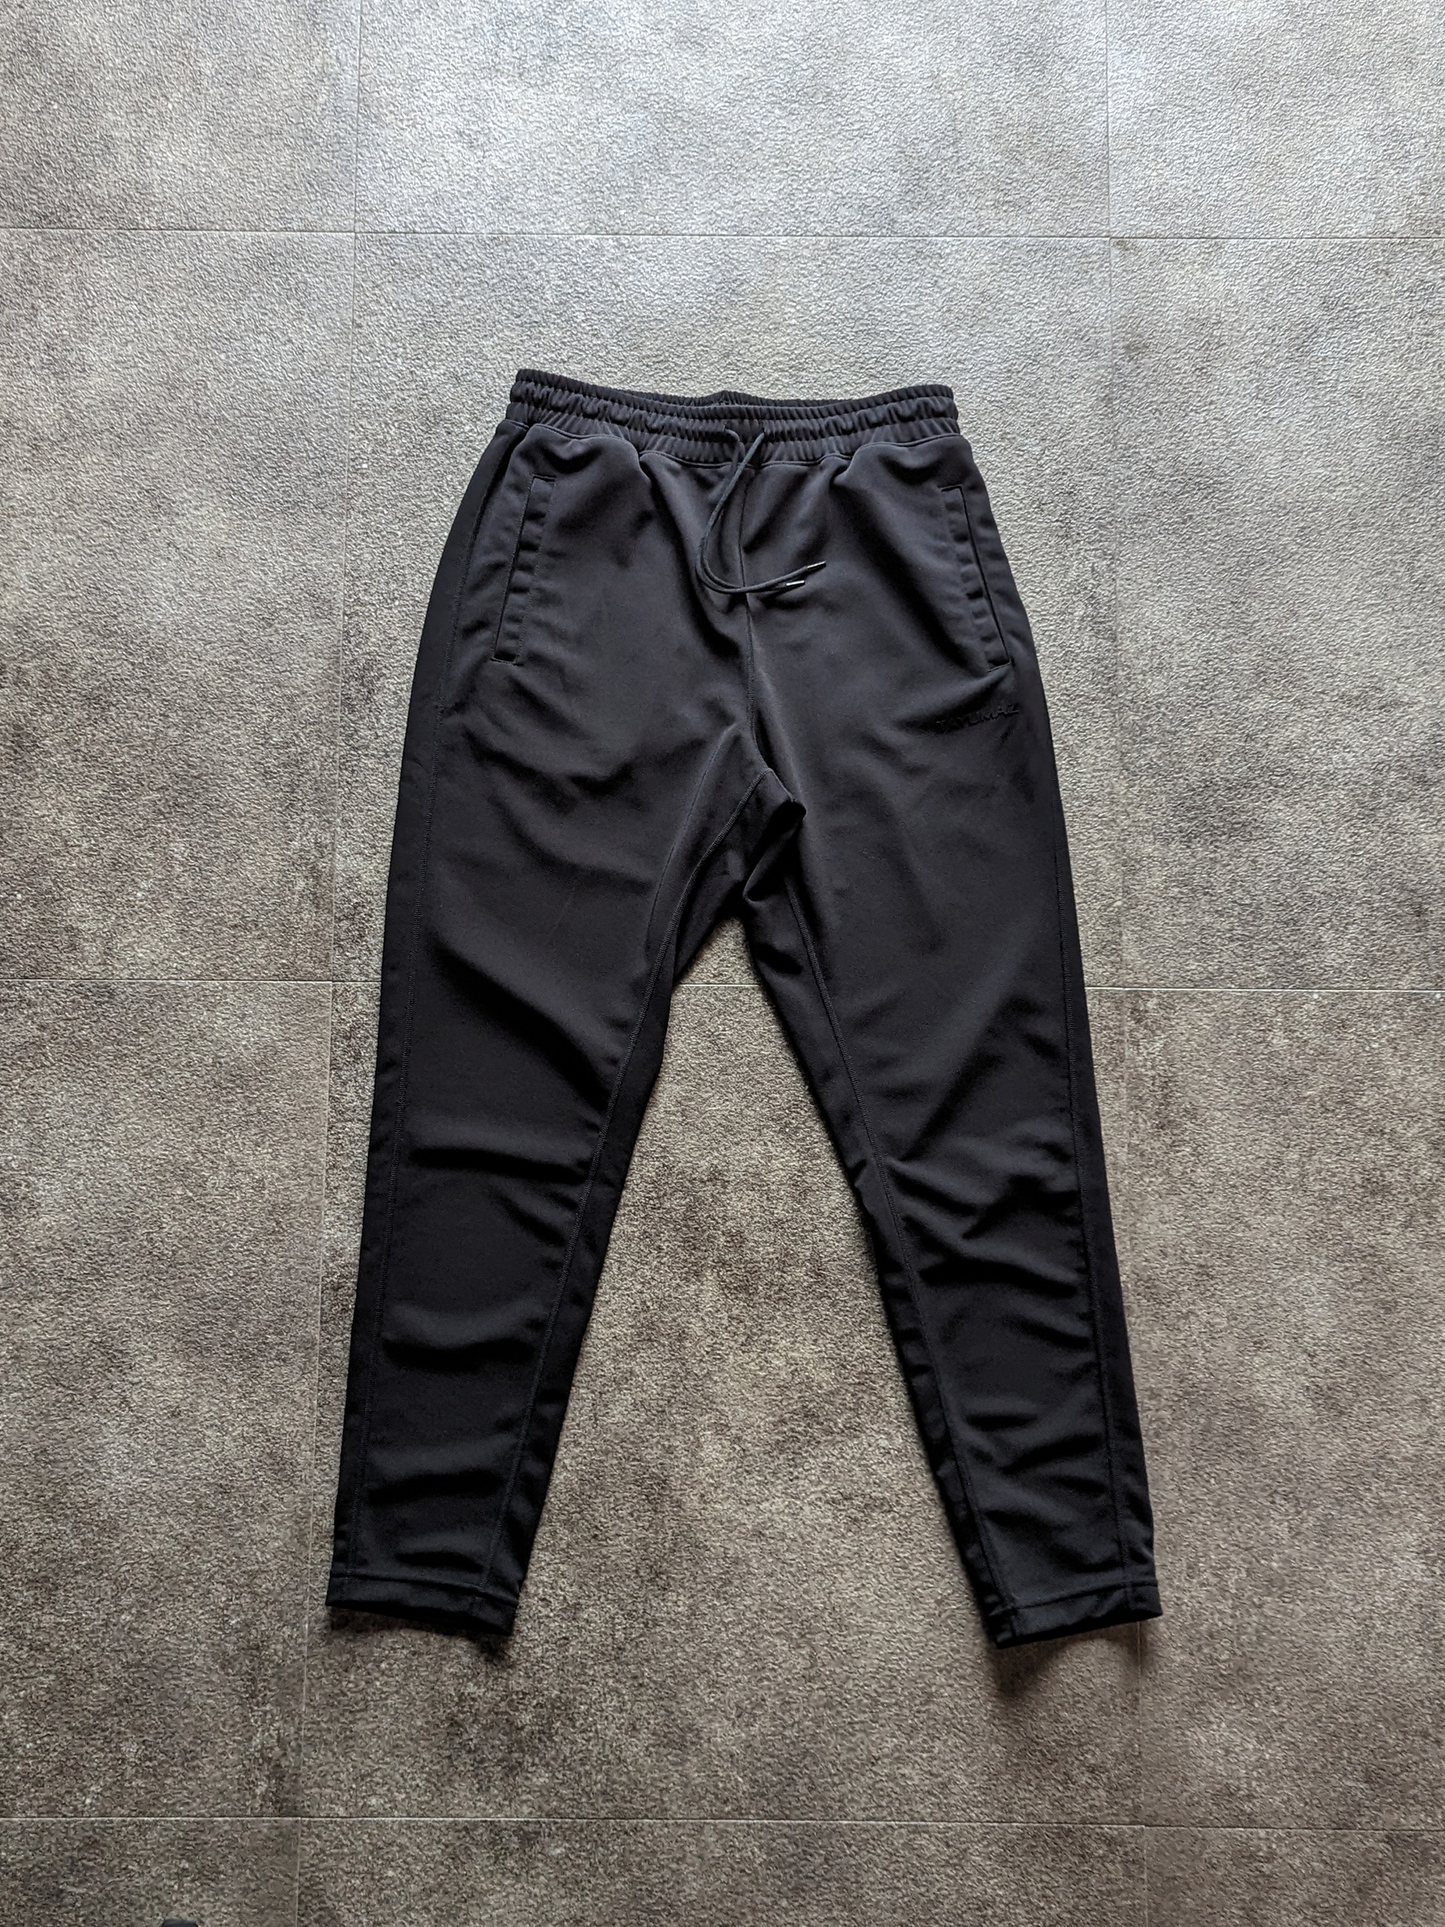 กางเกงขายาว Drysuiting สีดำ / โลโก้ Urban สีดำ